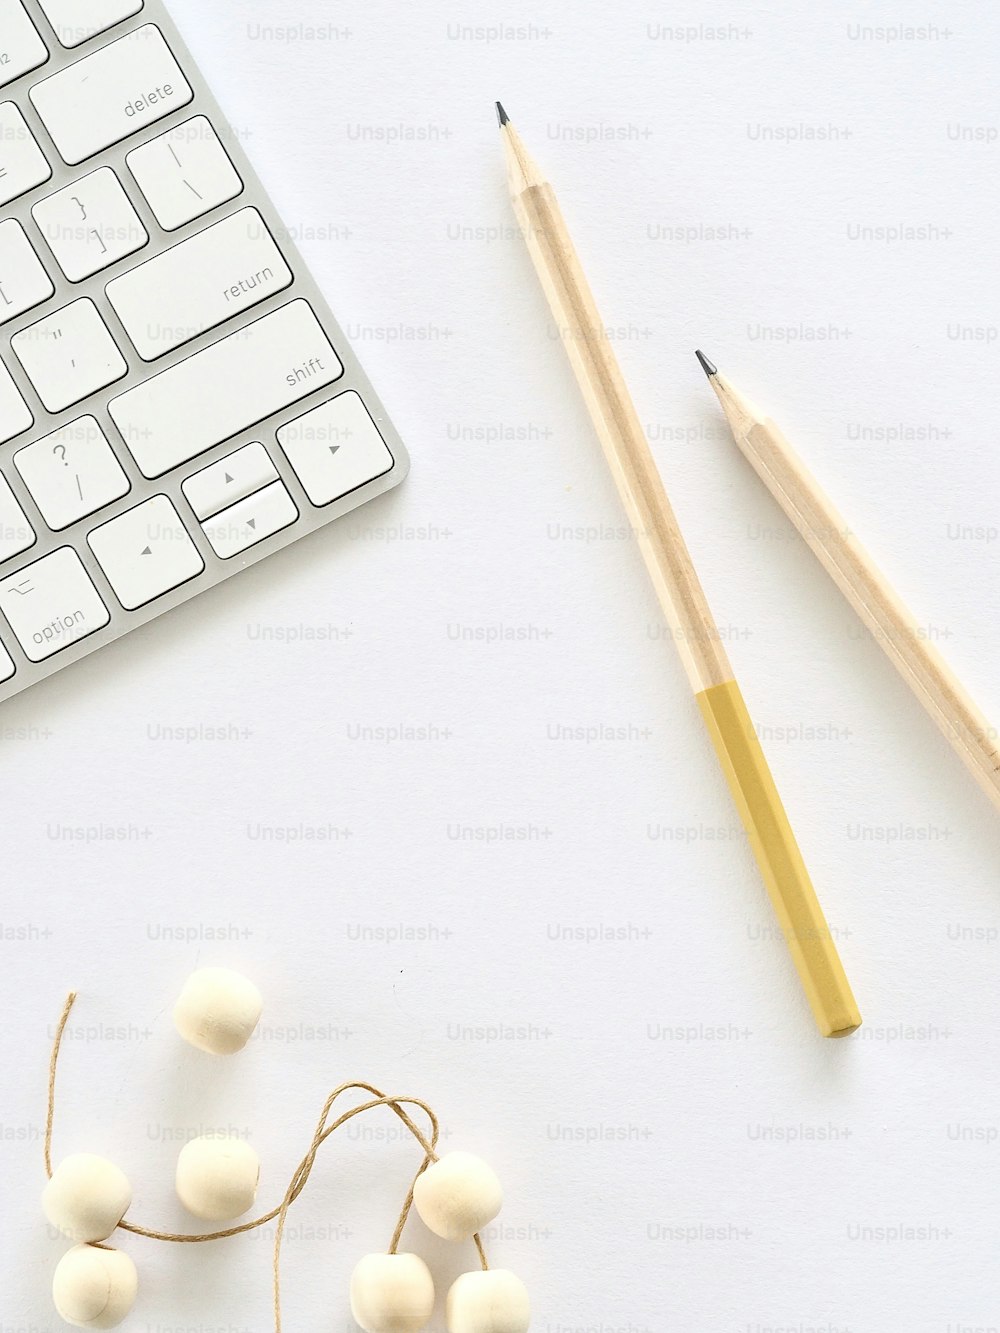 um teclado, lápis e algumas bolas de algodão em uma mesa